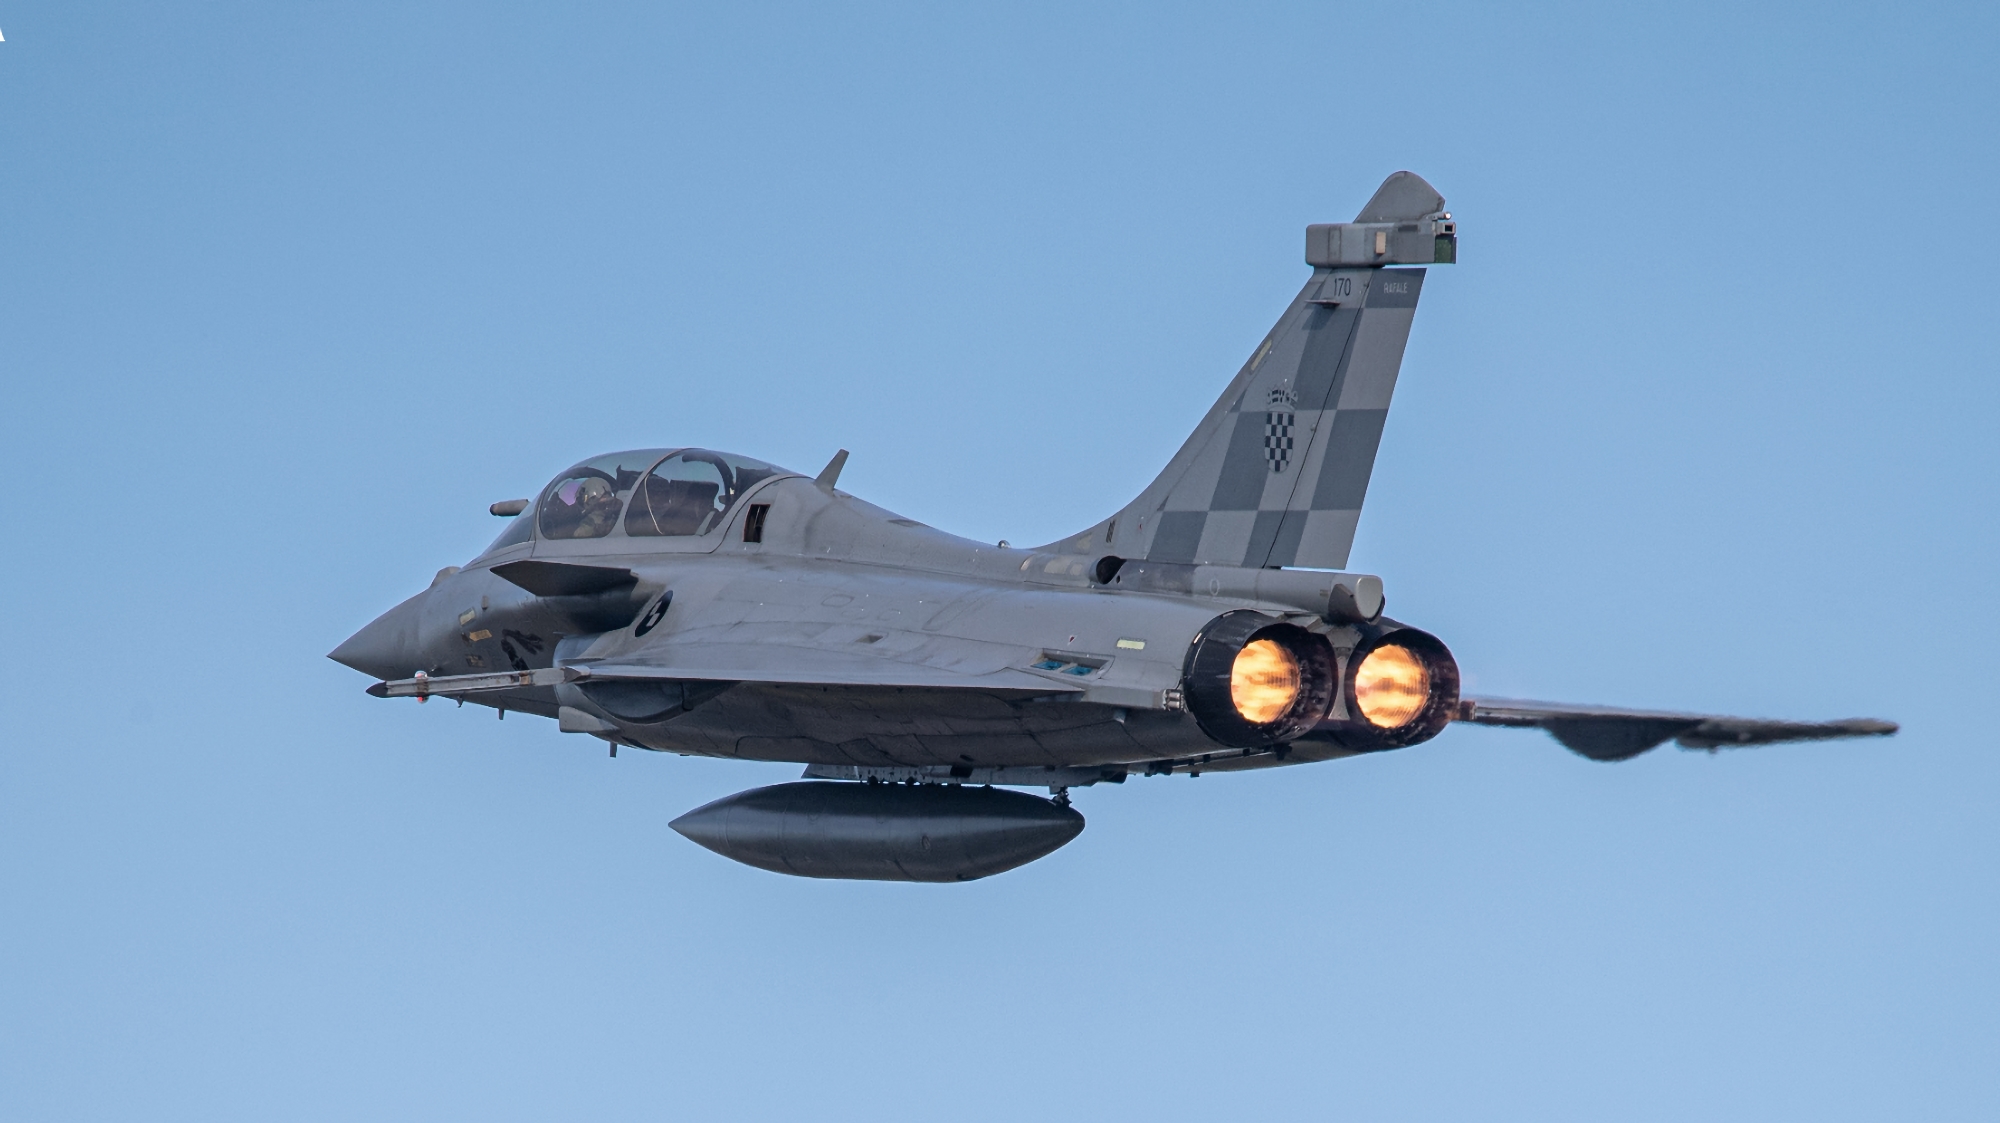 Frankrike överlämnade det första fjärde generationens Dassault Rafale B stridsflygplan till Kroatien